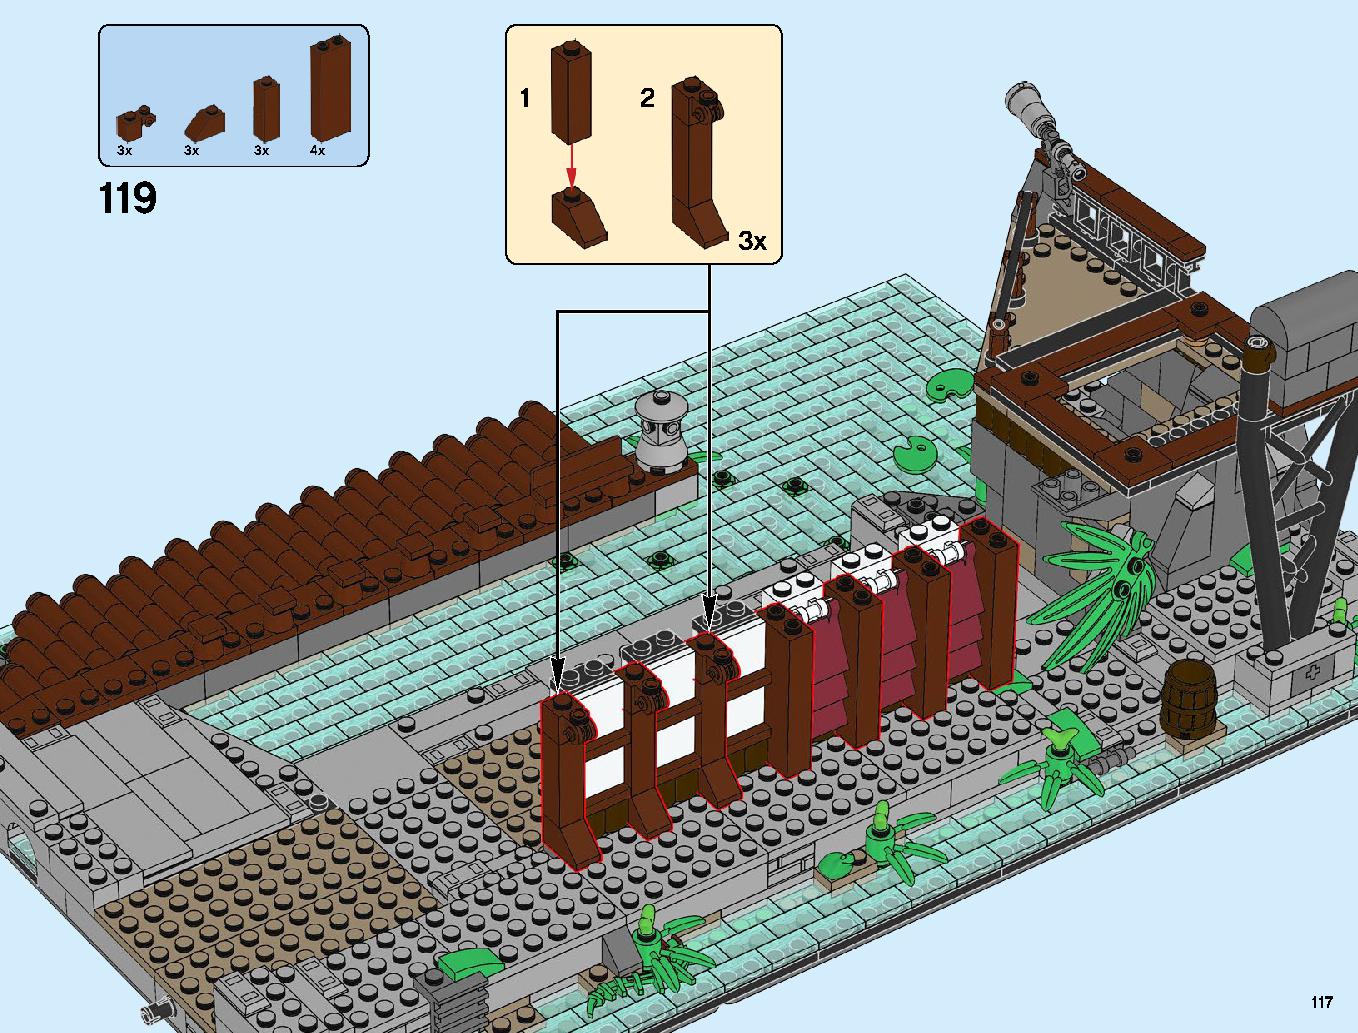 ニンジャゴーシティ・ポートパーク 70657 レゴの商品情報 レゴの説明書・組立方法 117 page